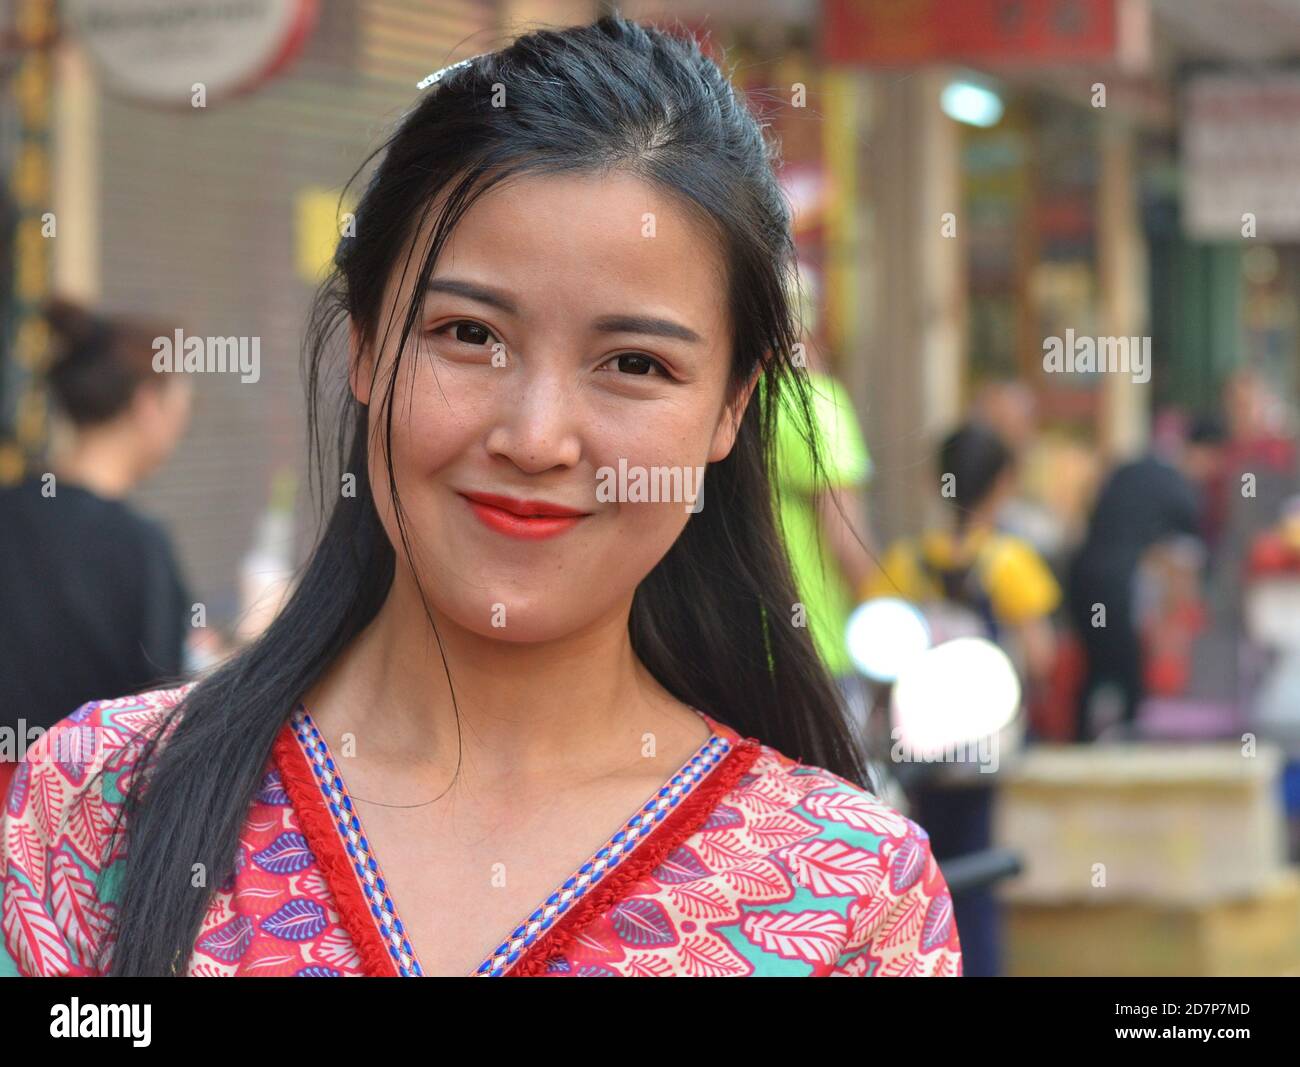 Une jeune femme thaïlandaise sud-est asiatique souriante et fermée aux lèvres rouges et aux cheveux longs pose pour la caméra dans une rue animée du centre-ville de Bangkok. Banque D'Images